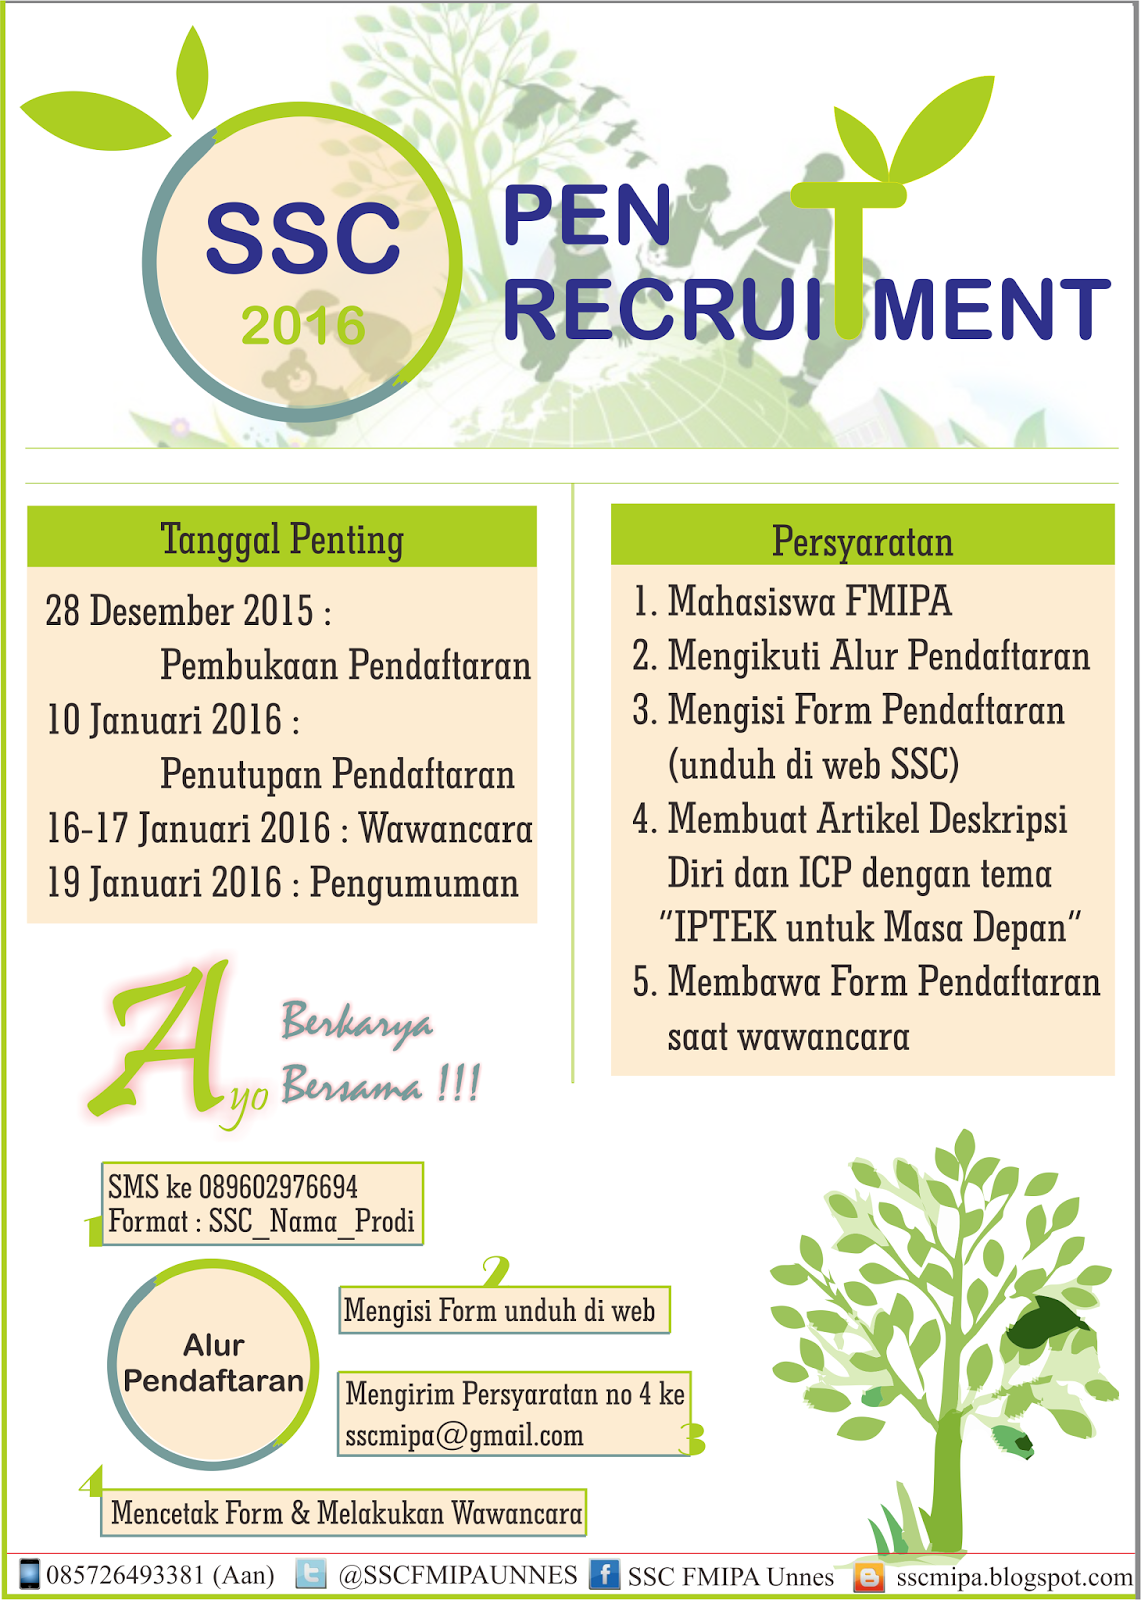 Open Recruitment SSC 2016 ~ SSC FMIPA